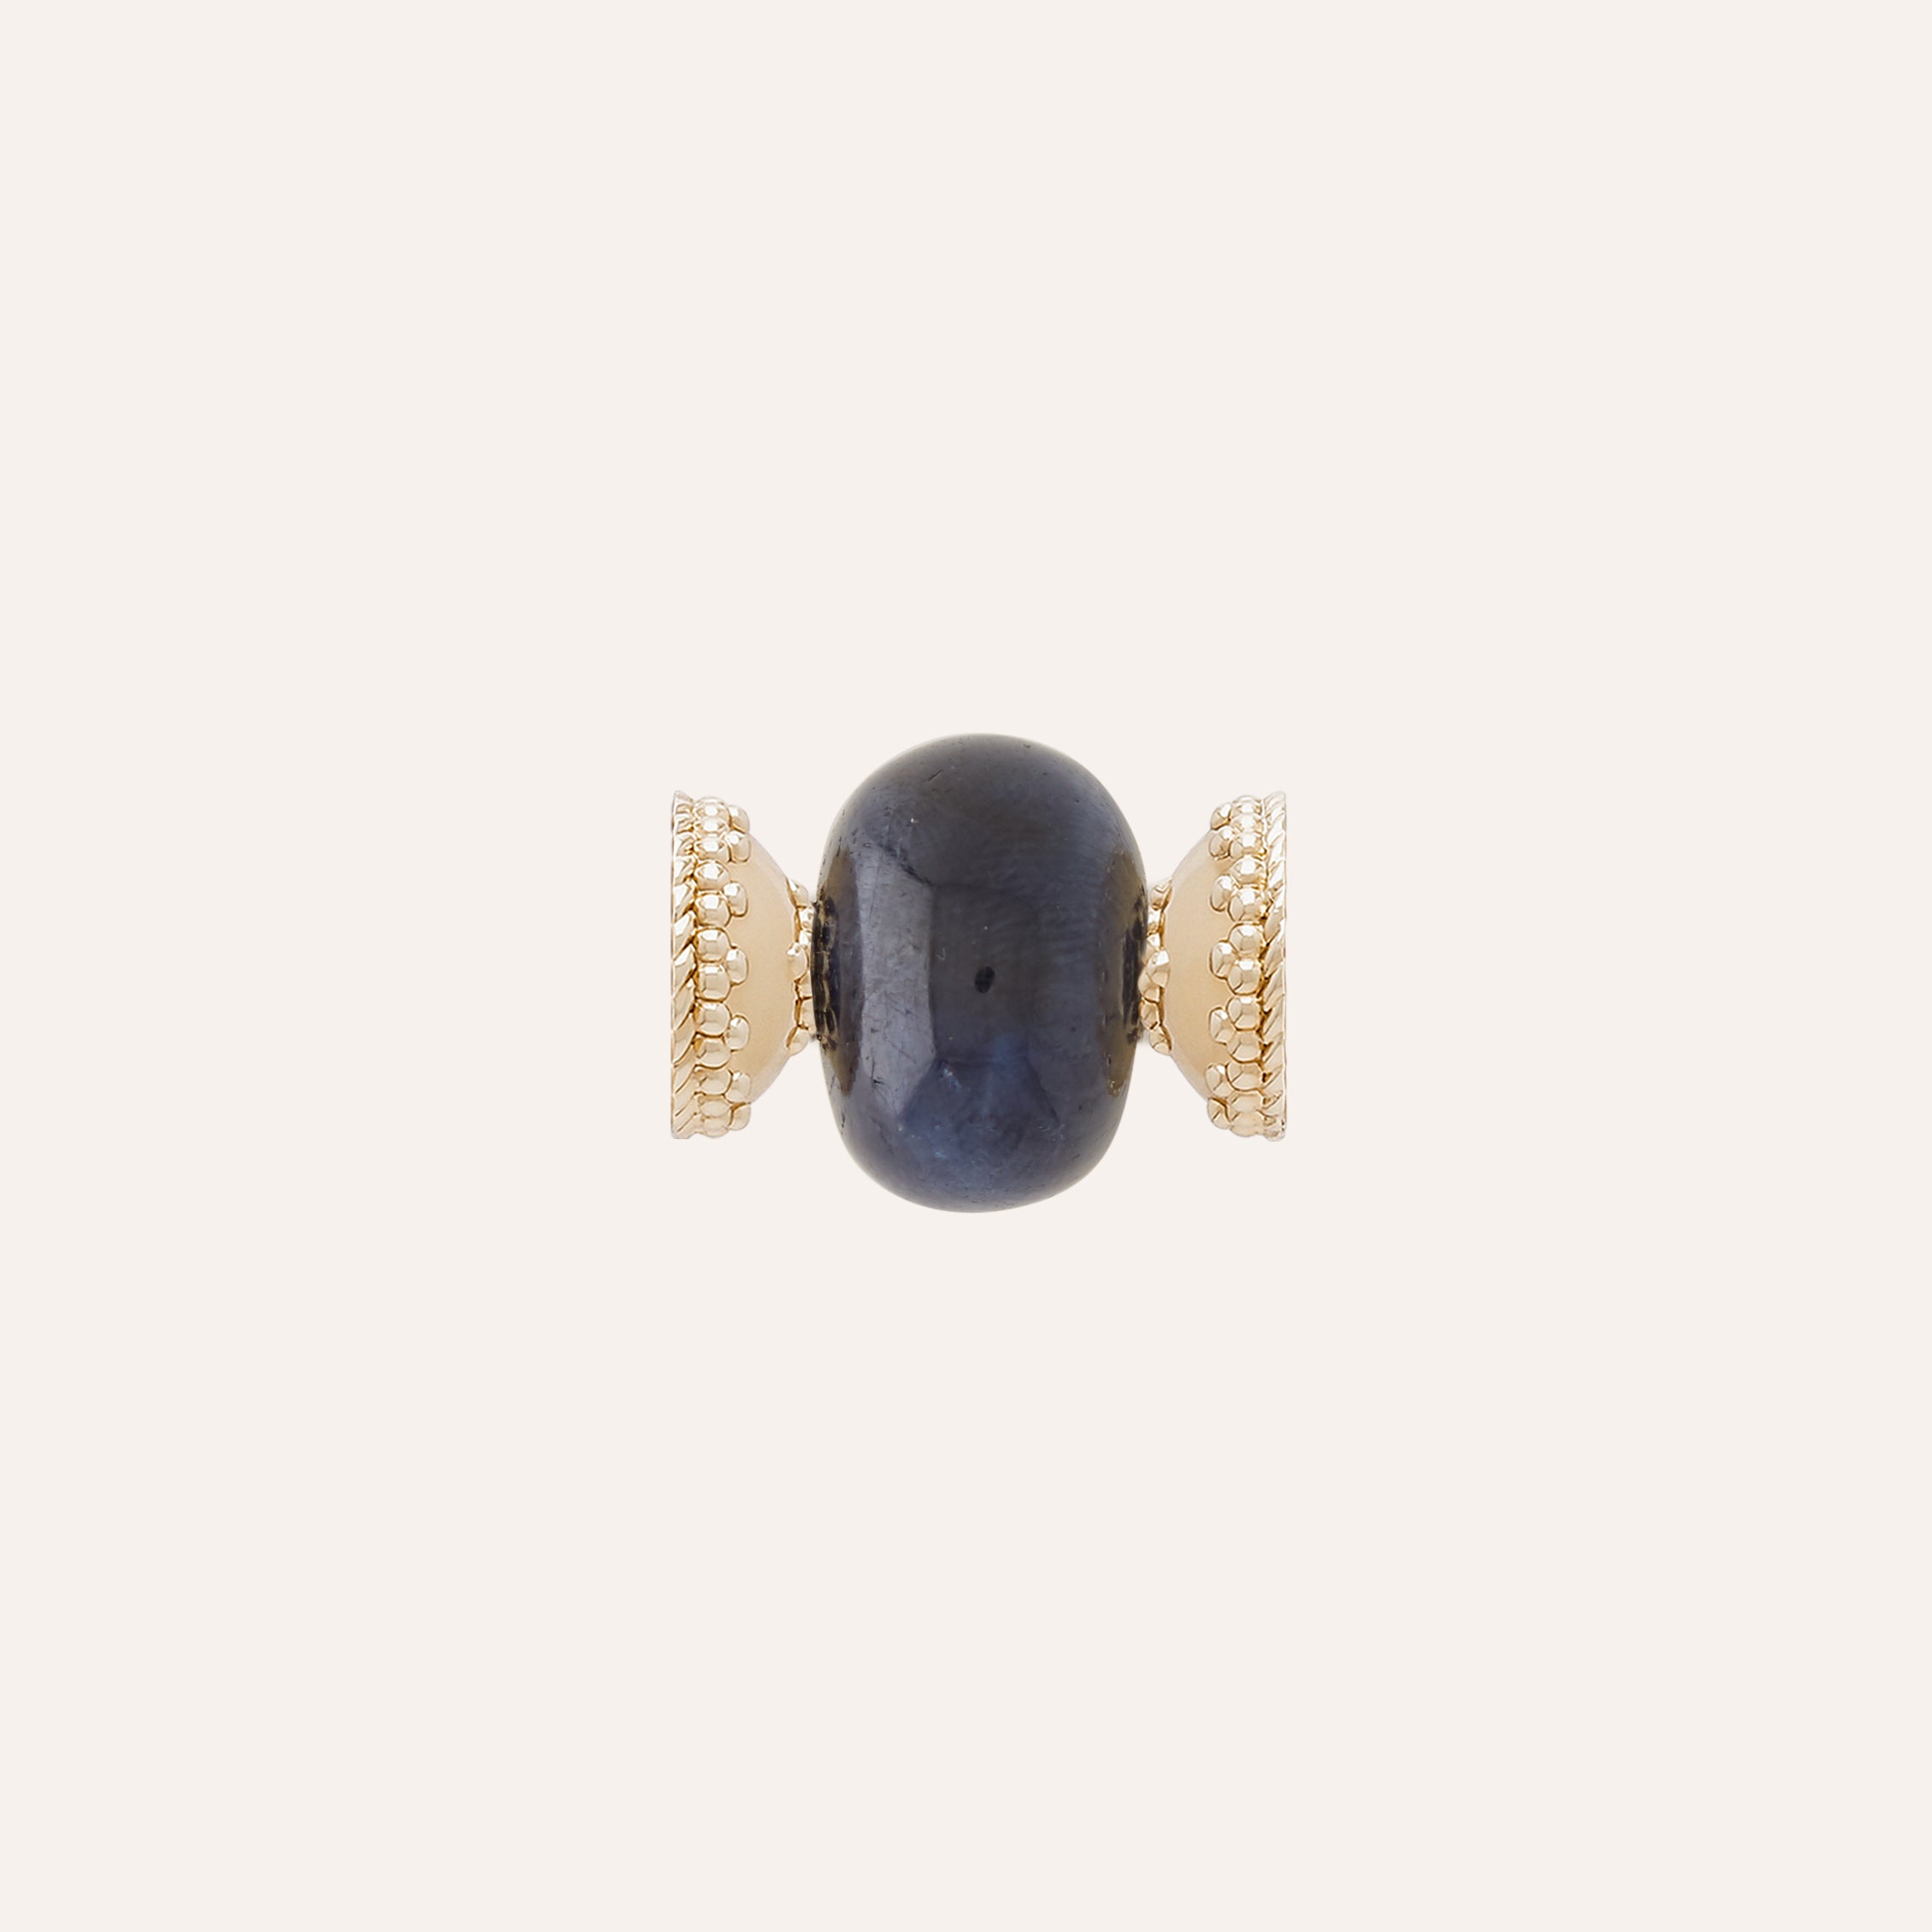 Medium Dark Blue Sapphire Rondelle Centerpiece